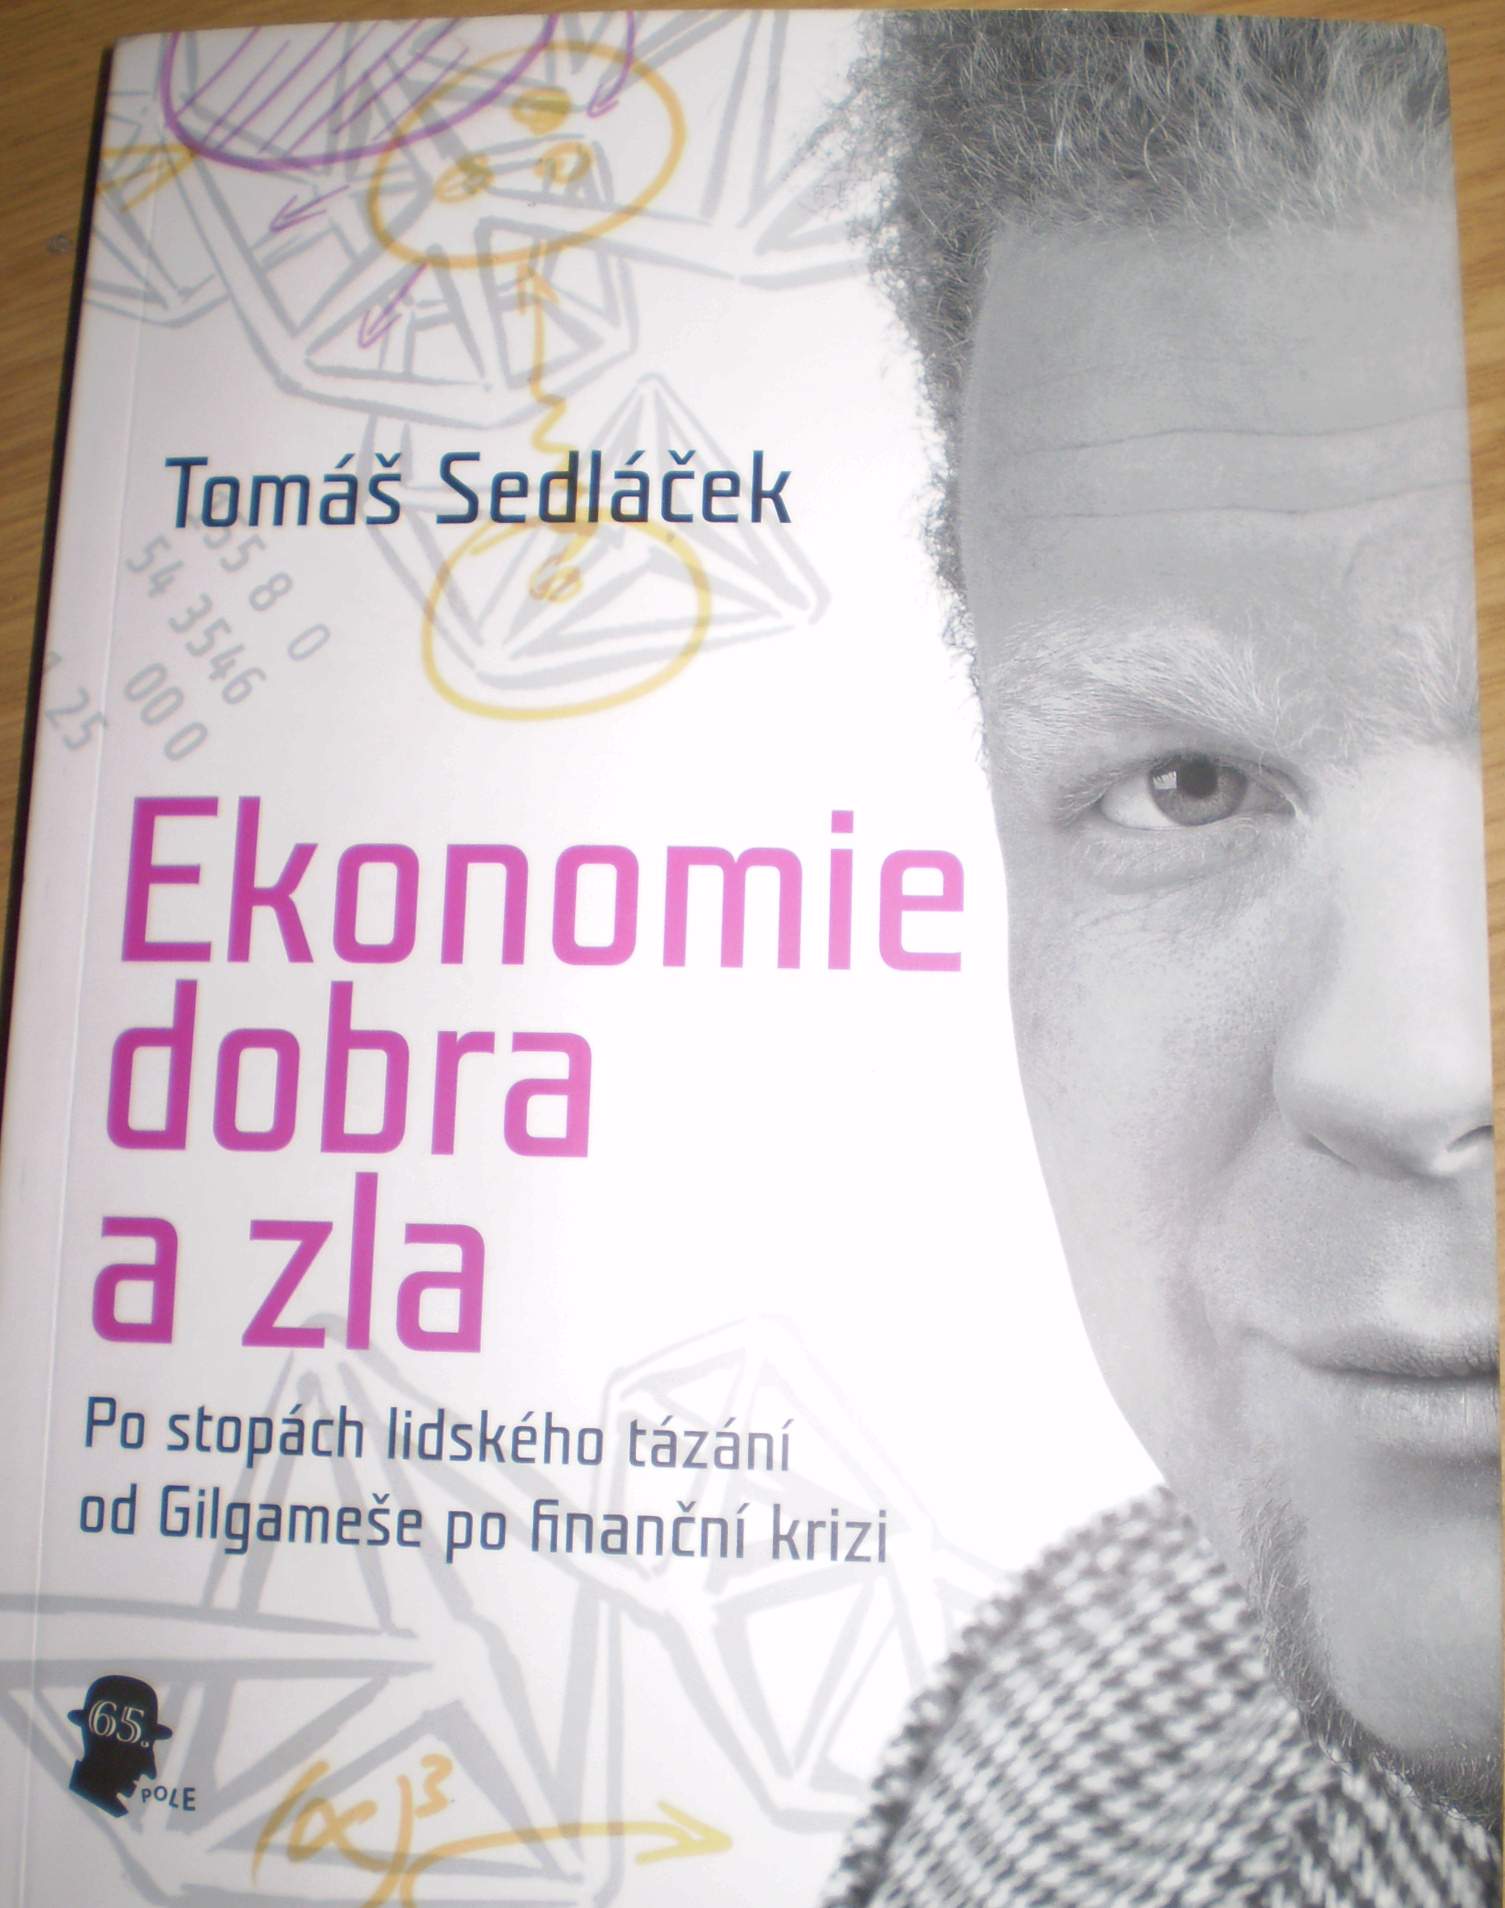 Superstarul in economie, cehul Tomas Sedlacek vine la Bucuresti